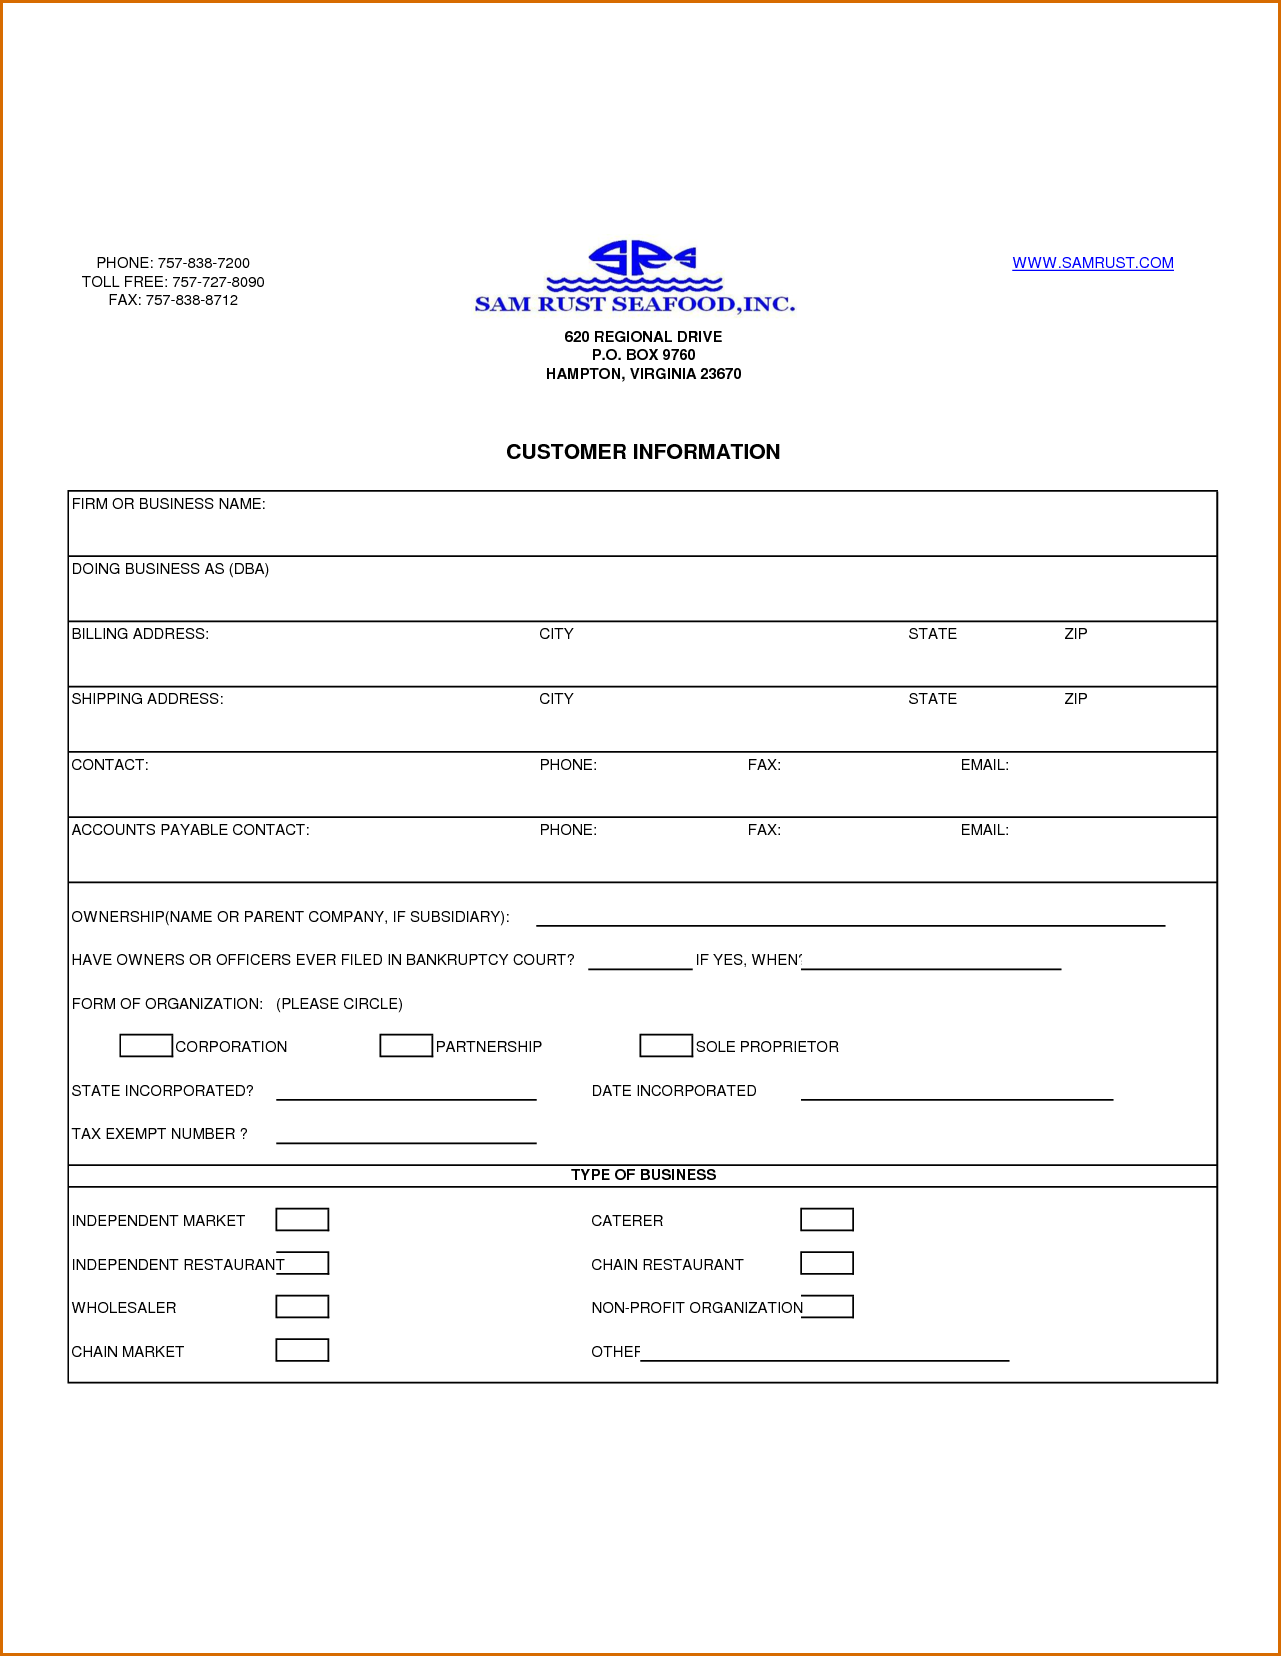 customer information template jianbochen memberpro co form 953 